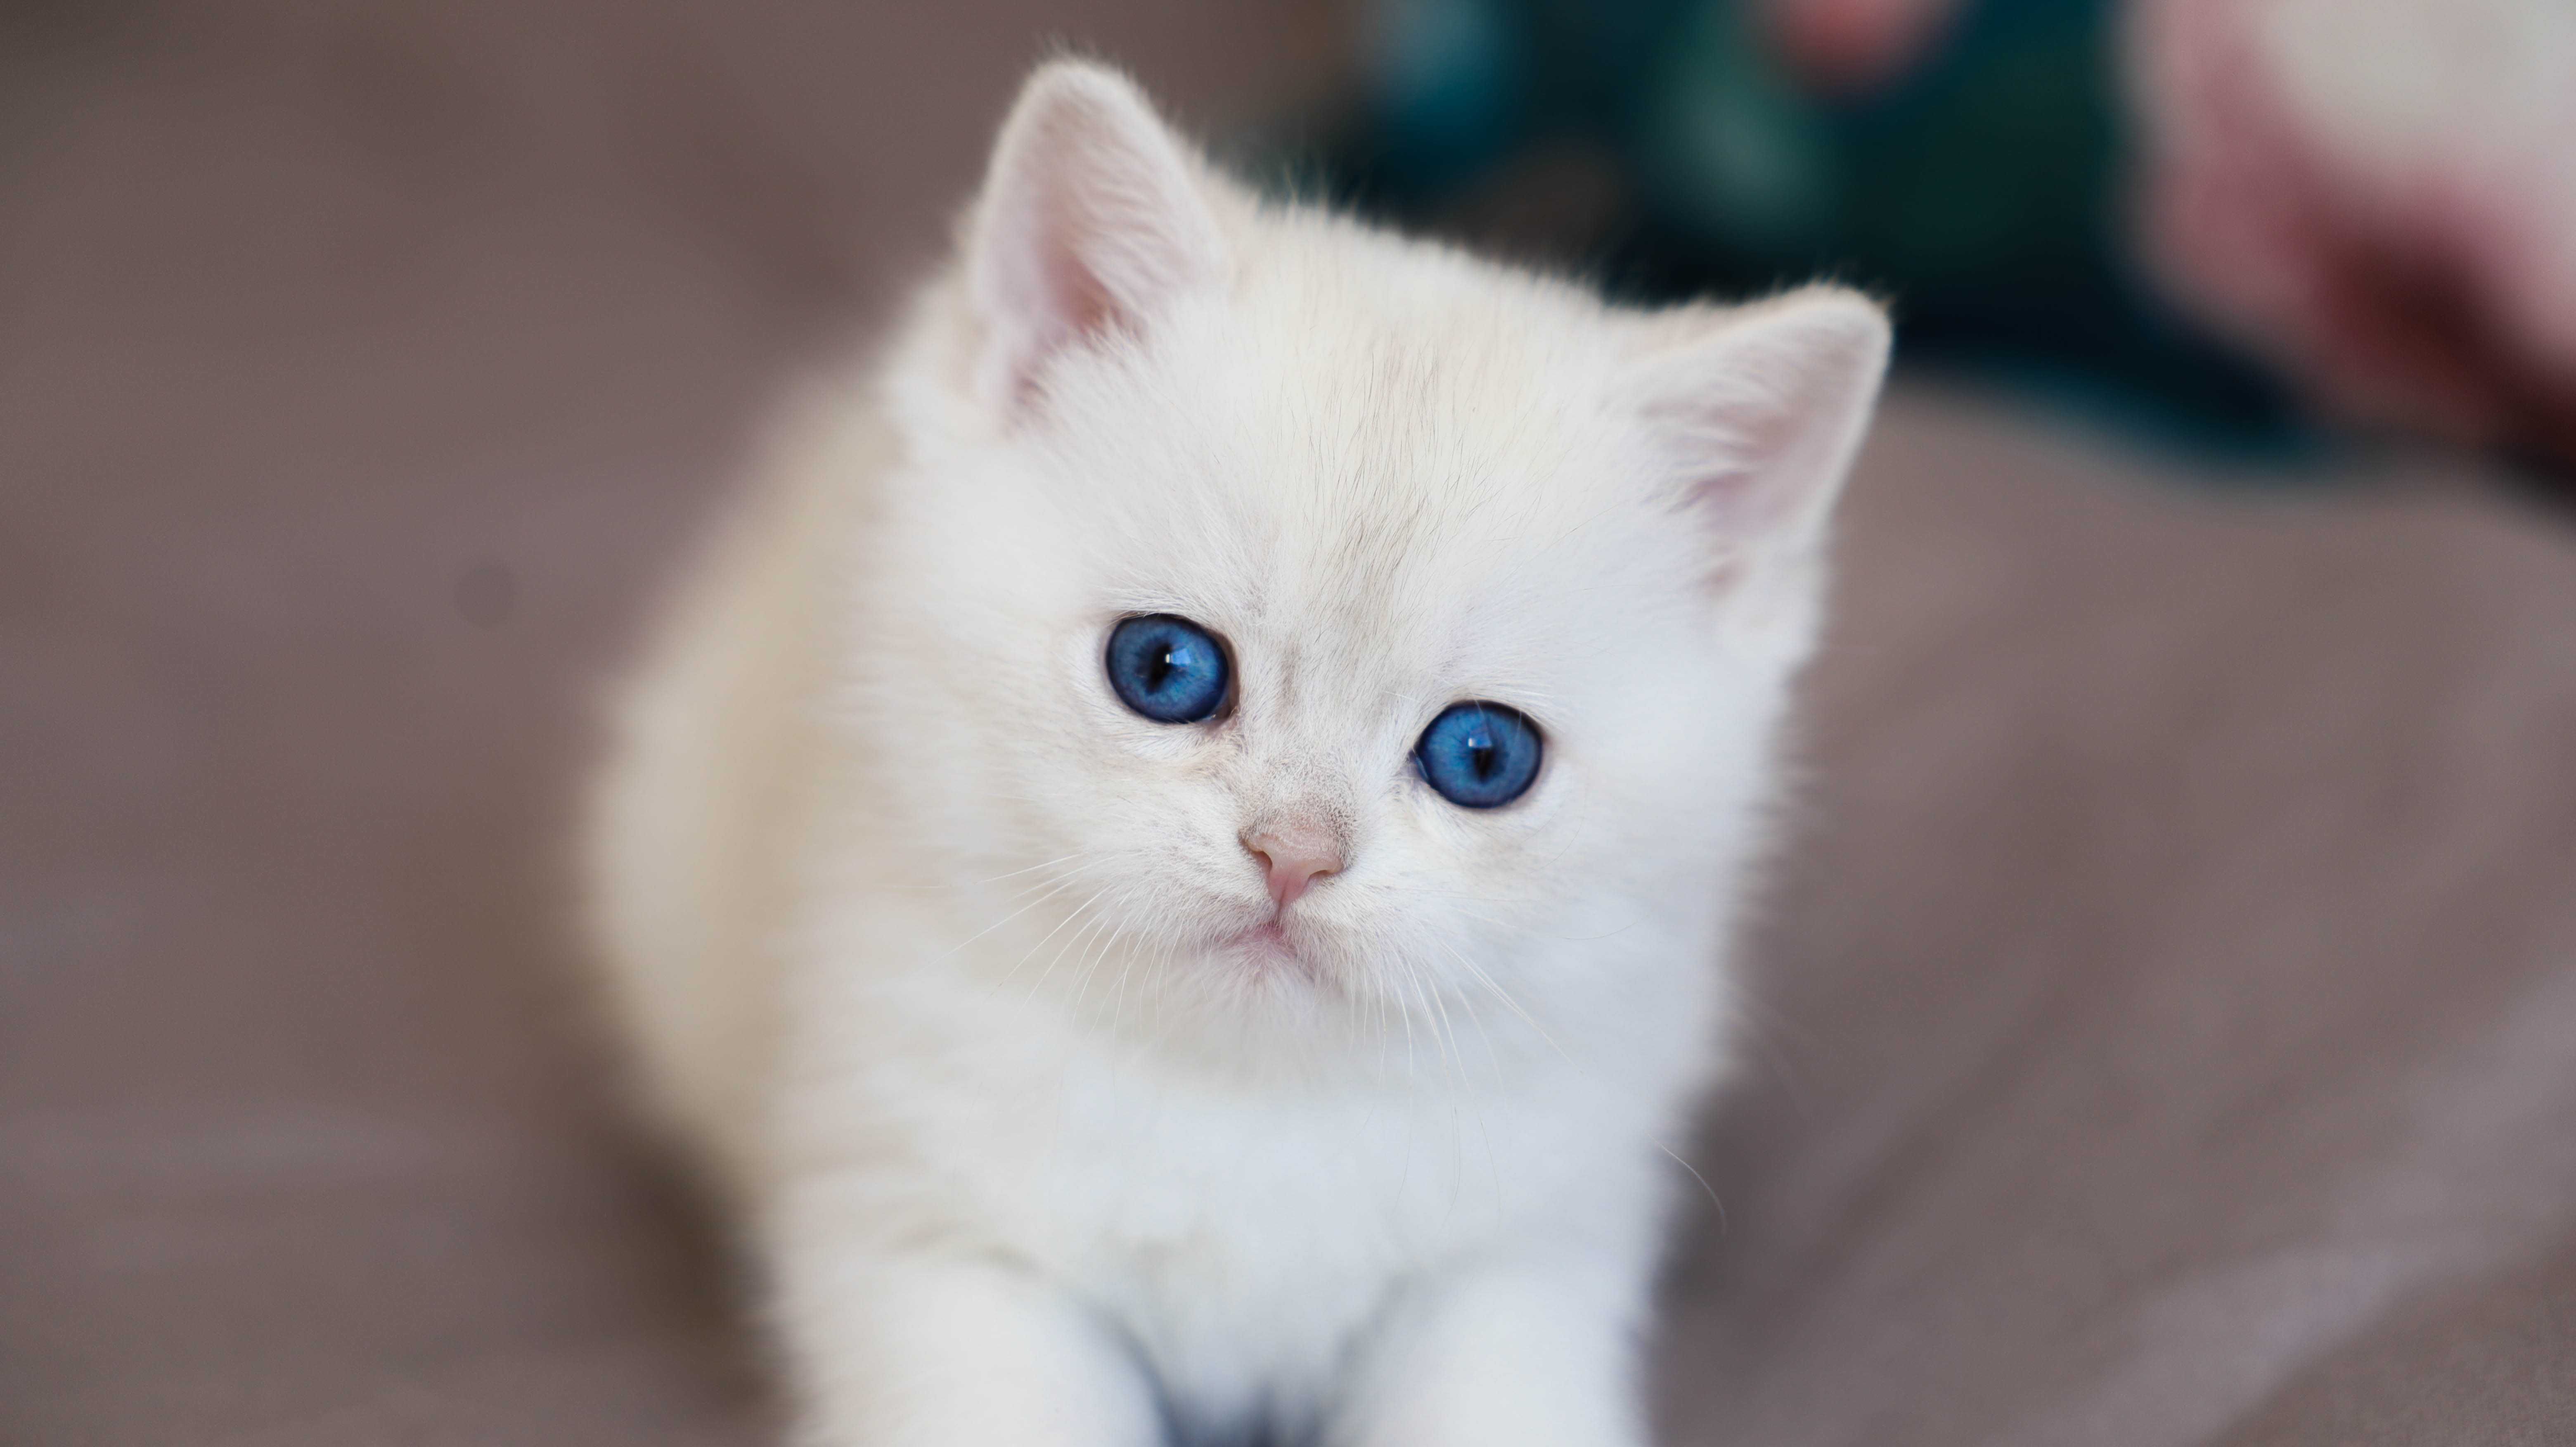 Do rezerwacji - rodowodowy Kociak brytyjski Point z Niebieskimi oczami